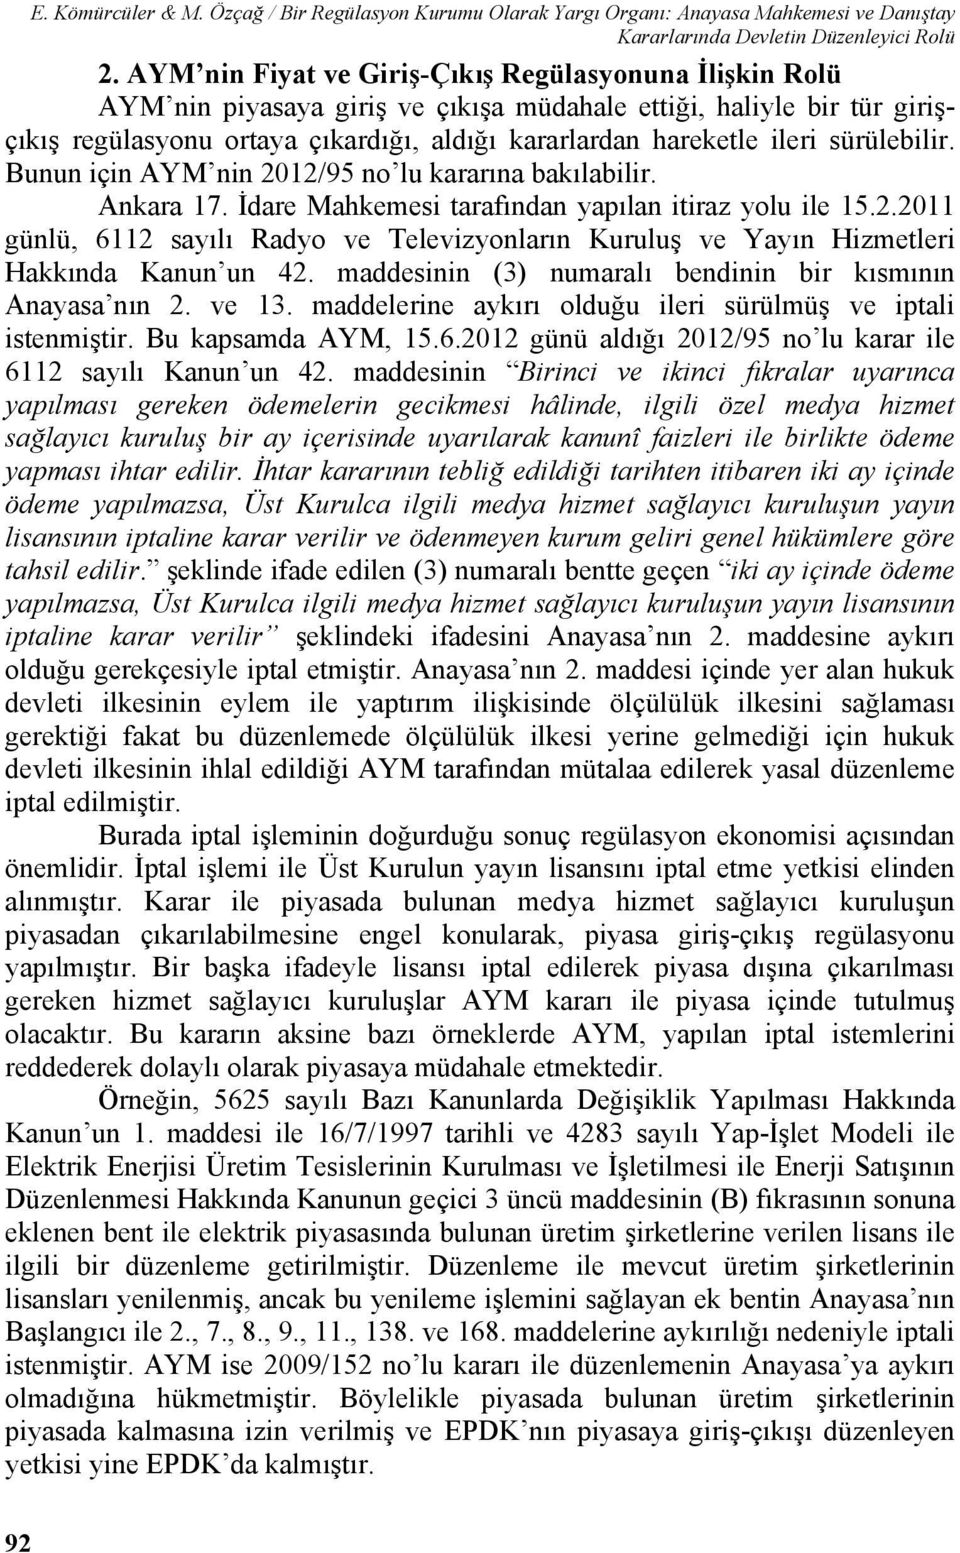 sürülebilir. Bunun için AYM nin 2012/95 no lu kararına bakılabilir. Ankara 17. İdare Mahkemesi tarafından yapılan itiraz yolu ile 15.2.2011 günlü, 6112 sayılı Radyo ve Televizyonların Kuruluş ve Yayın Hizmetleri Hakkında Kanun un 42.